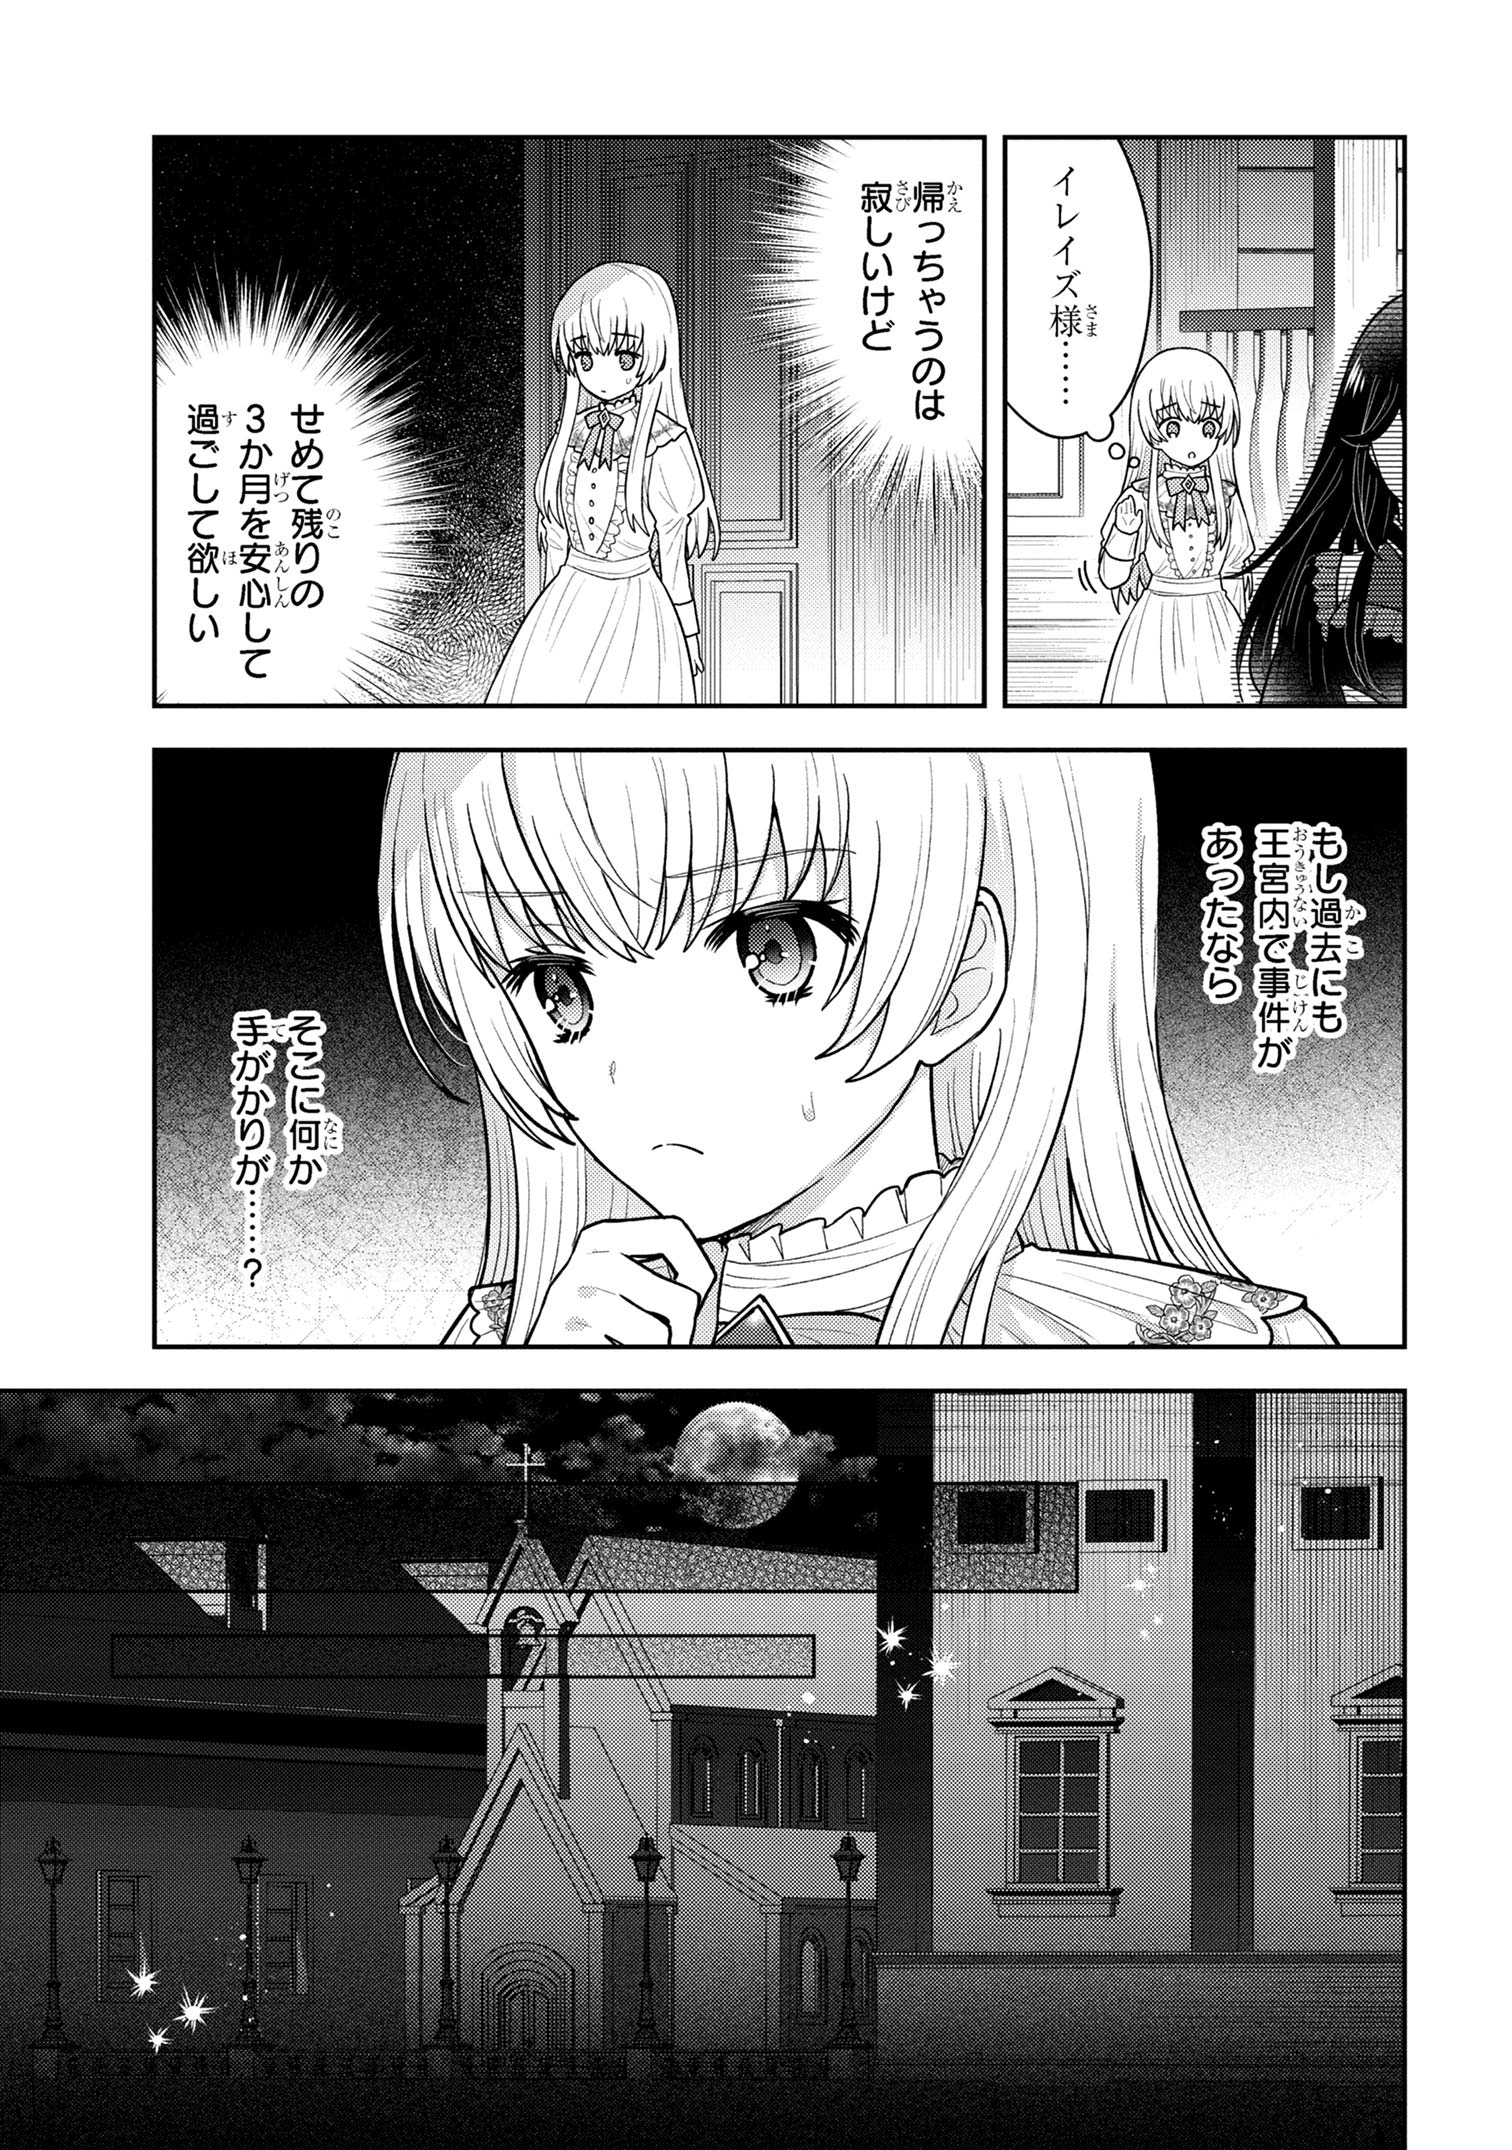 Motosister Reijo no Migawari Ohi Koho Seikatsu Kamisama ni Bureina Hito wa Kono Watashi ga Yurushimasen - Chapter 7.1 - Page 11